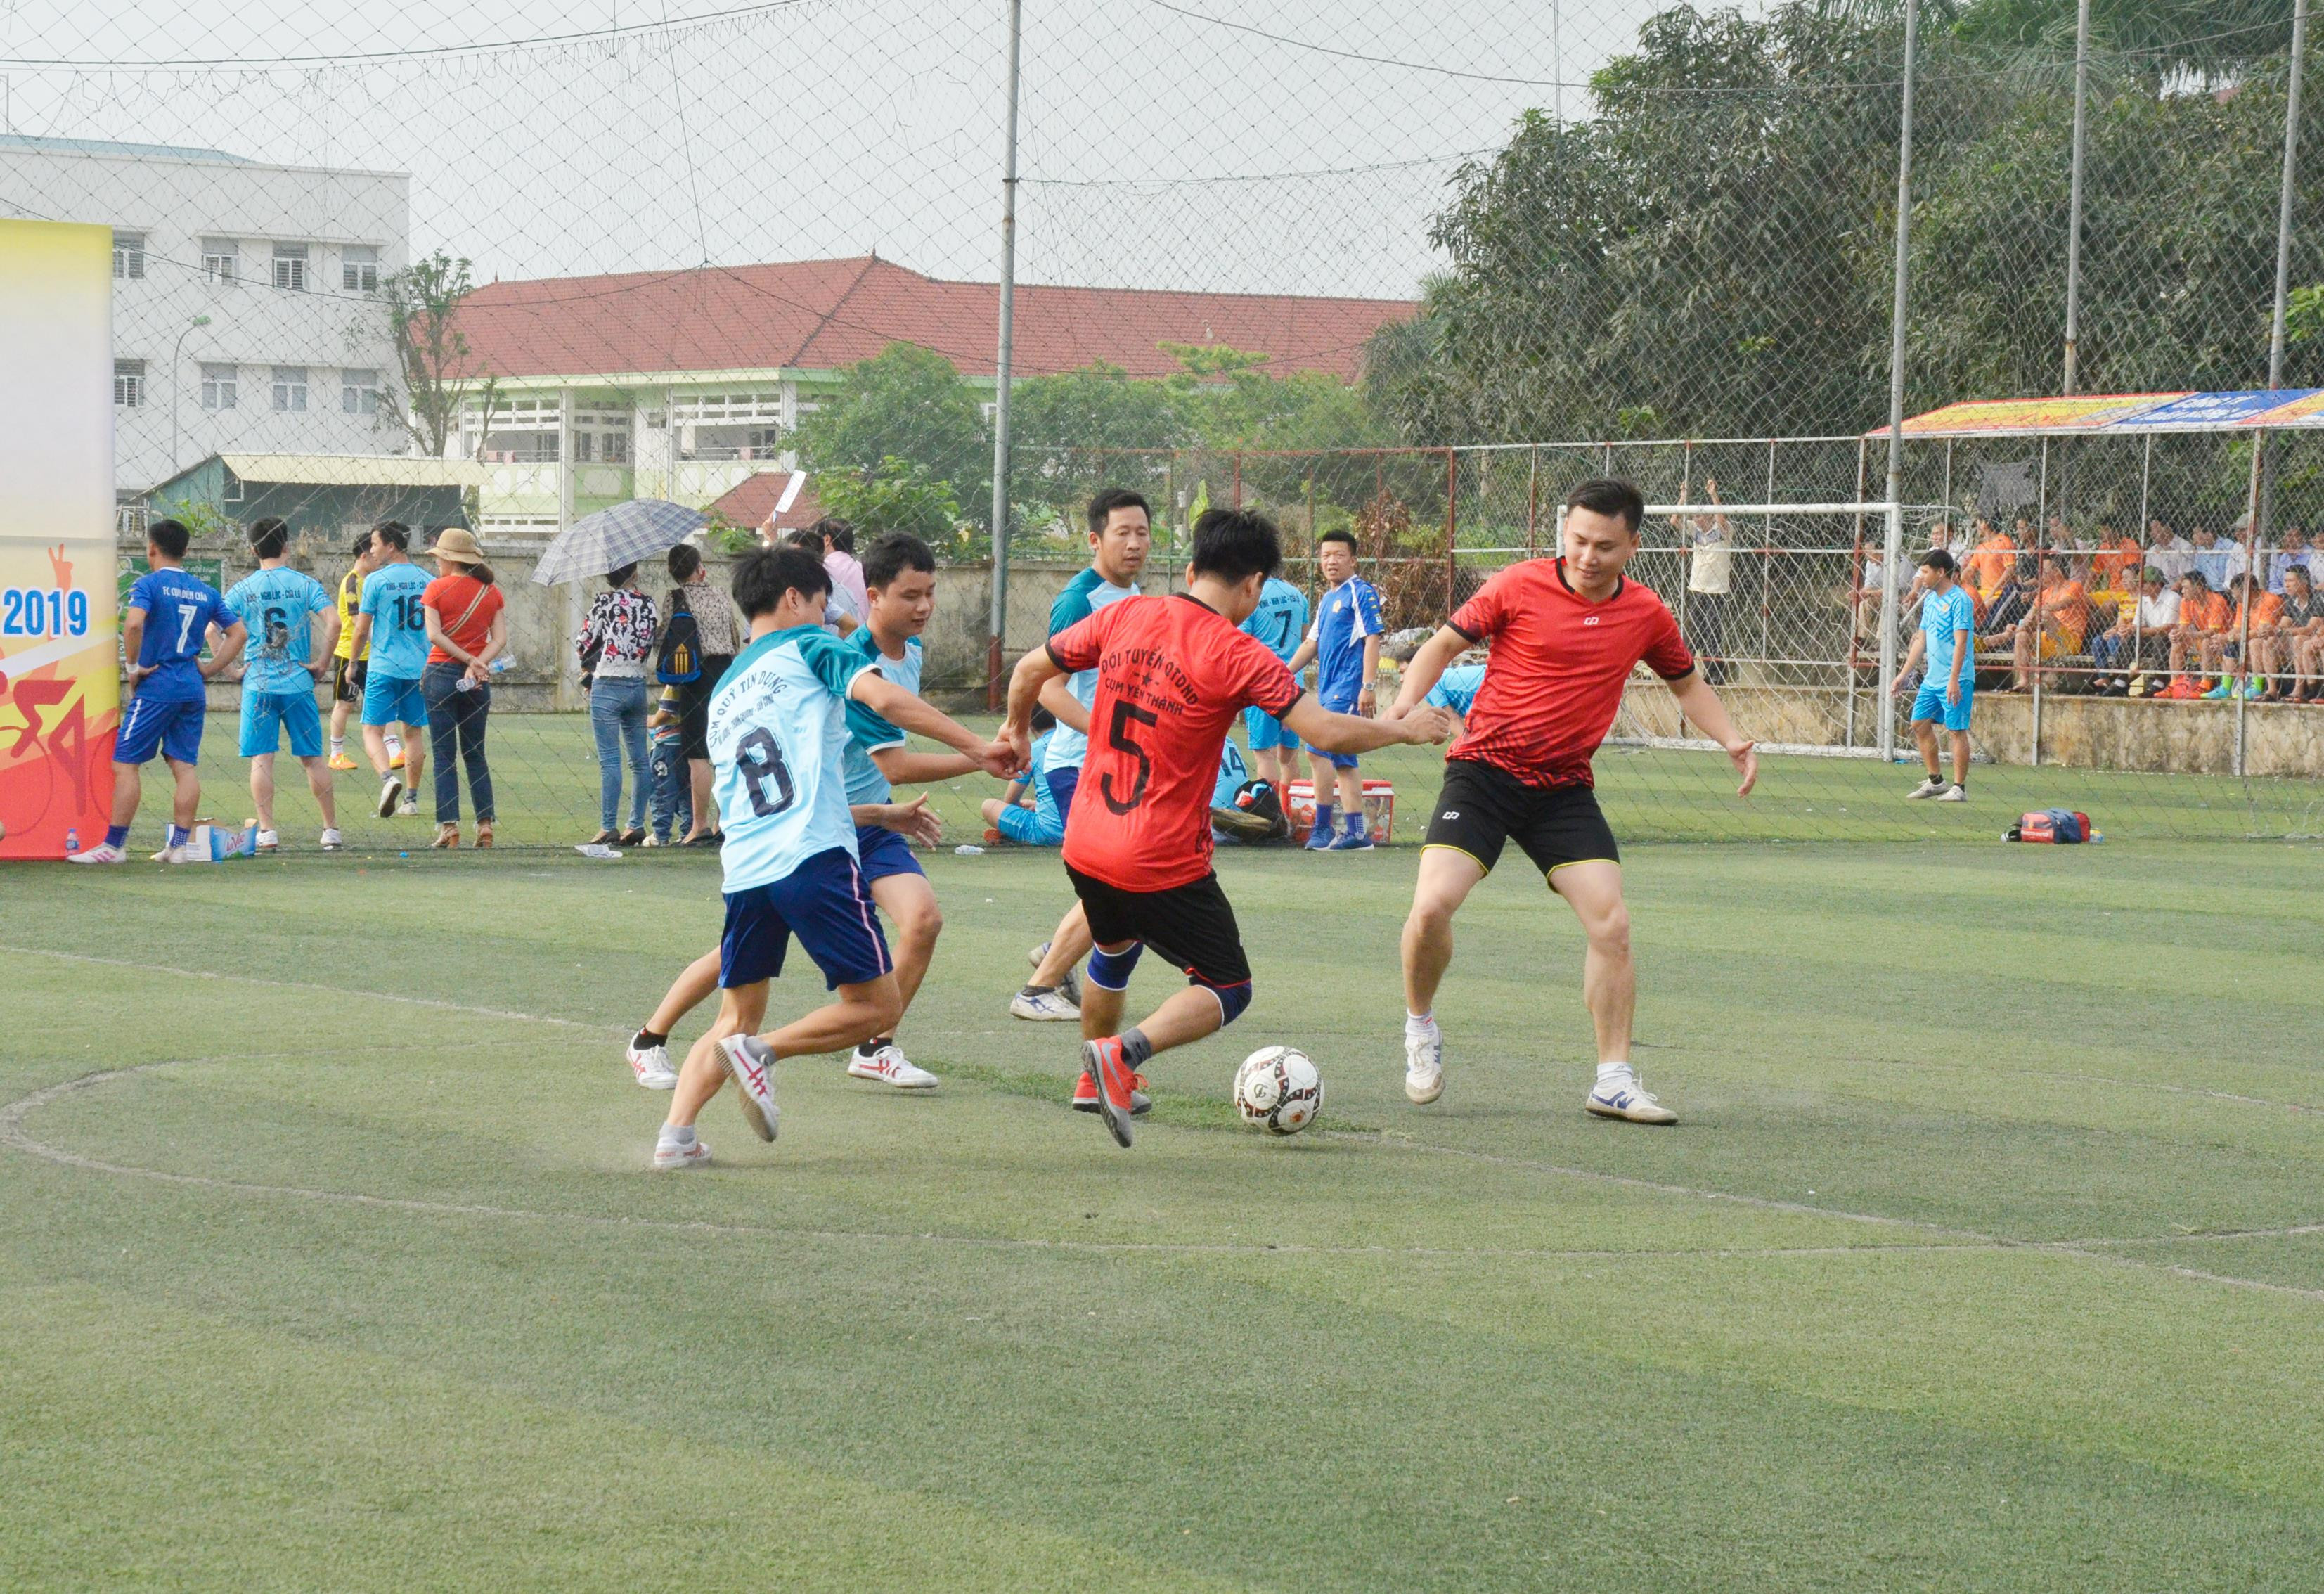 Ngay sau lễ khai mạc đã diễn ra trận đấu vòng loại giữa hai đội Quỹ tín dụng nhân dân Yên Thành và Đô Lương. Ảnh: Thu Hương